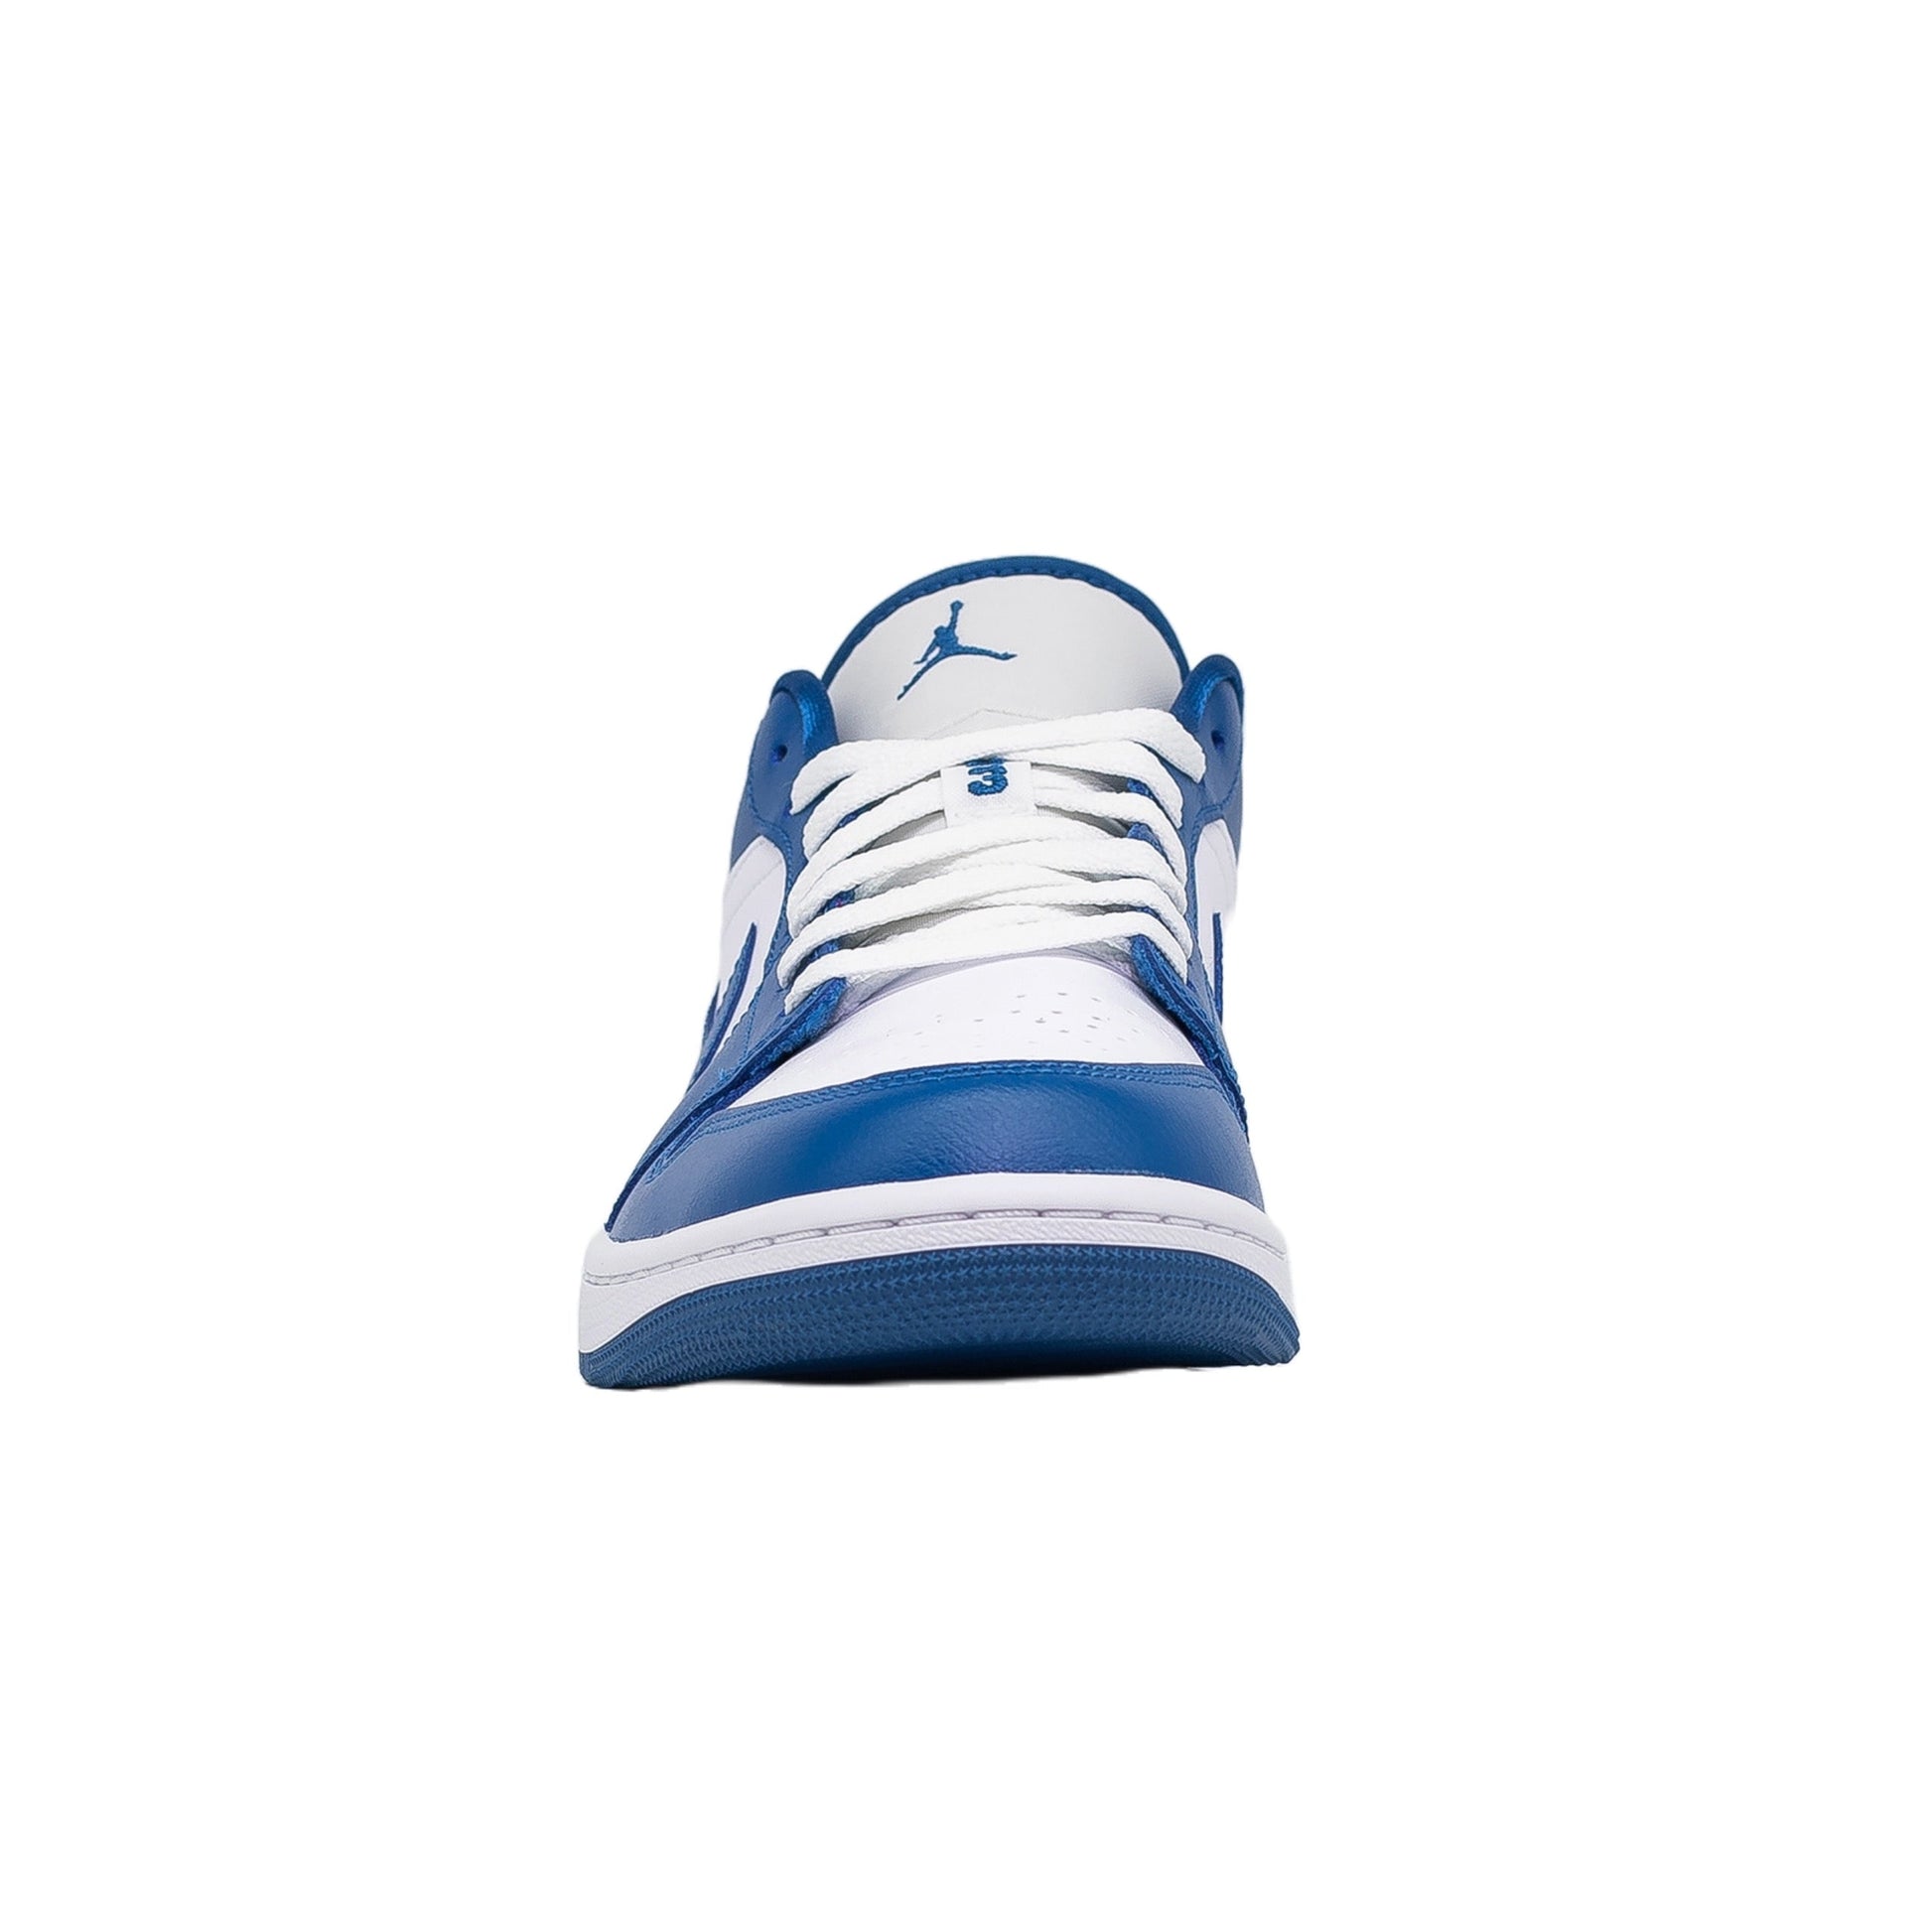 Women's Air Nike air jordan 1 low se mmd bg white mango pink blue dh7547-100 7y womens 8.5, Marina Blue